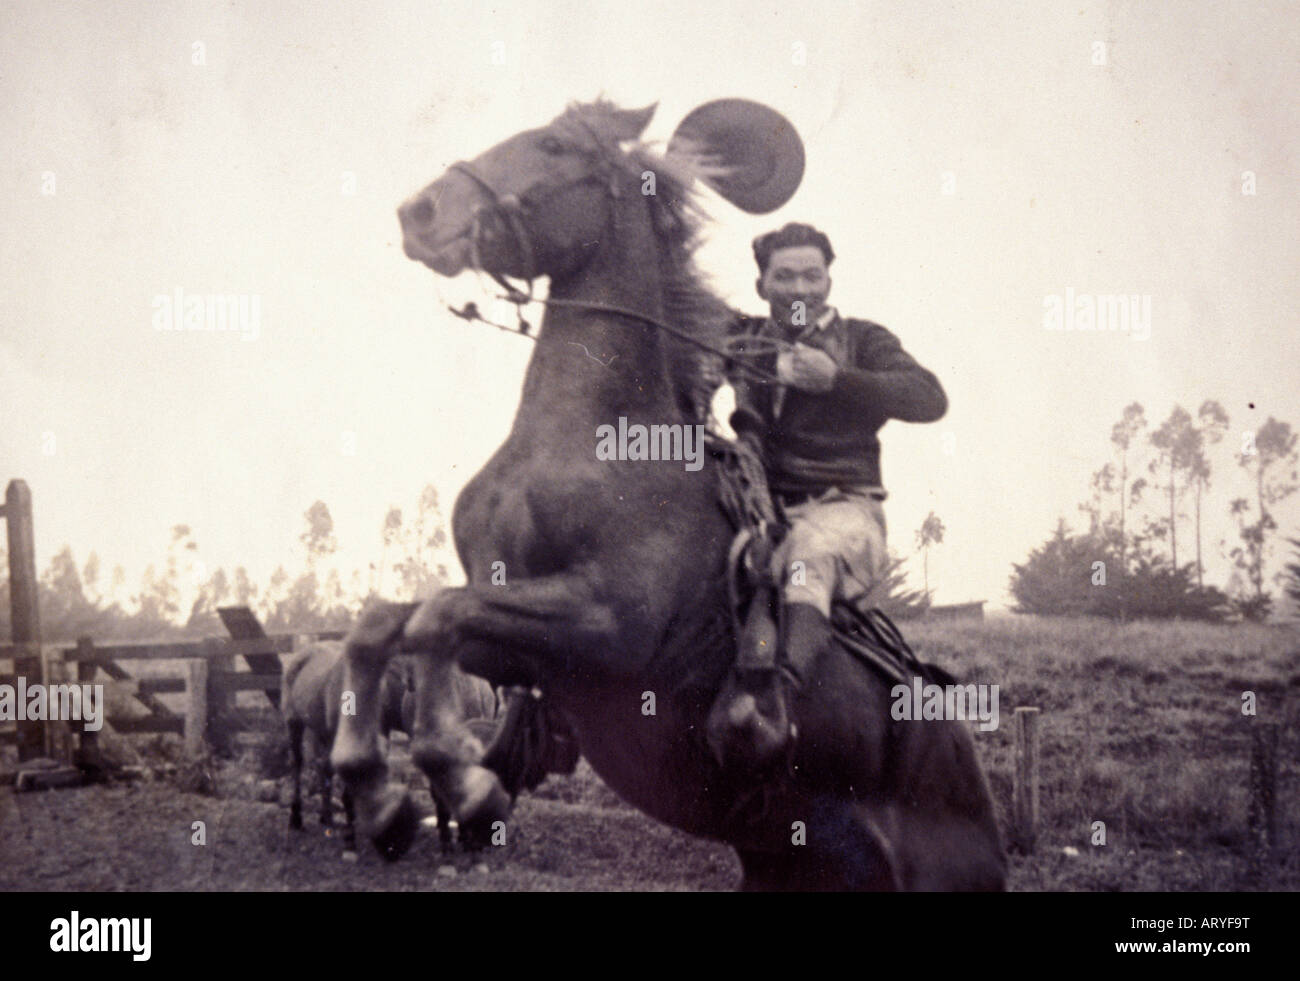 Photographie noir et blanc des archives de Yutaka Kimura, le ìWaimea ◎,Cowboy sur cheval Banque D'Images